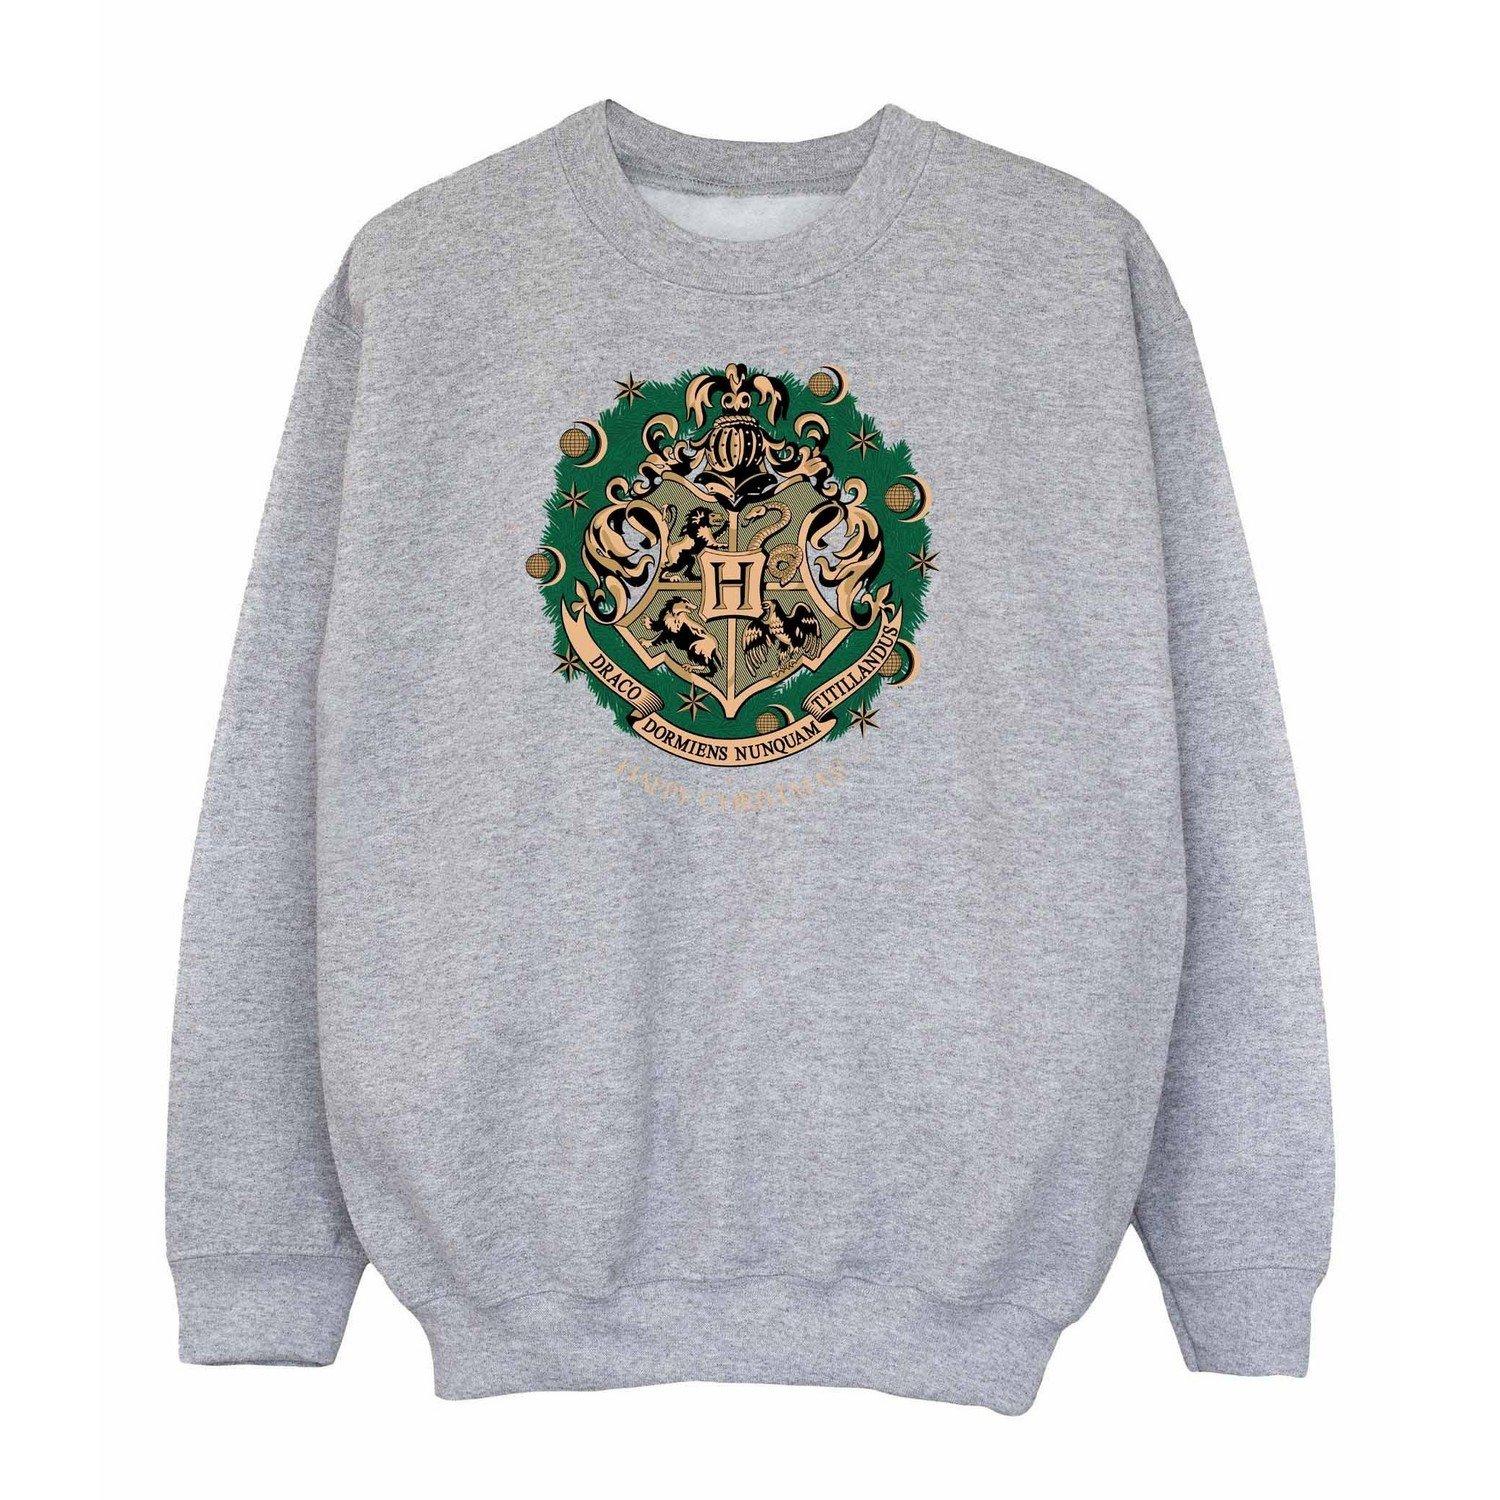 Sweatshirt Weihnachtliches Design Unisex Grau 116 von Harry Potter